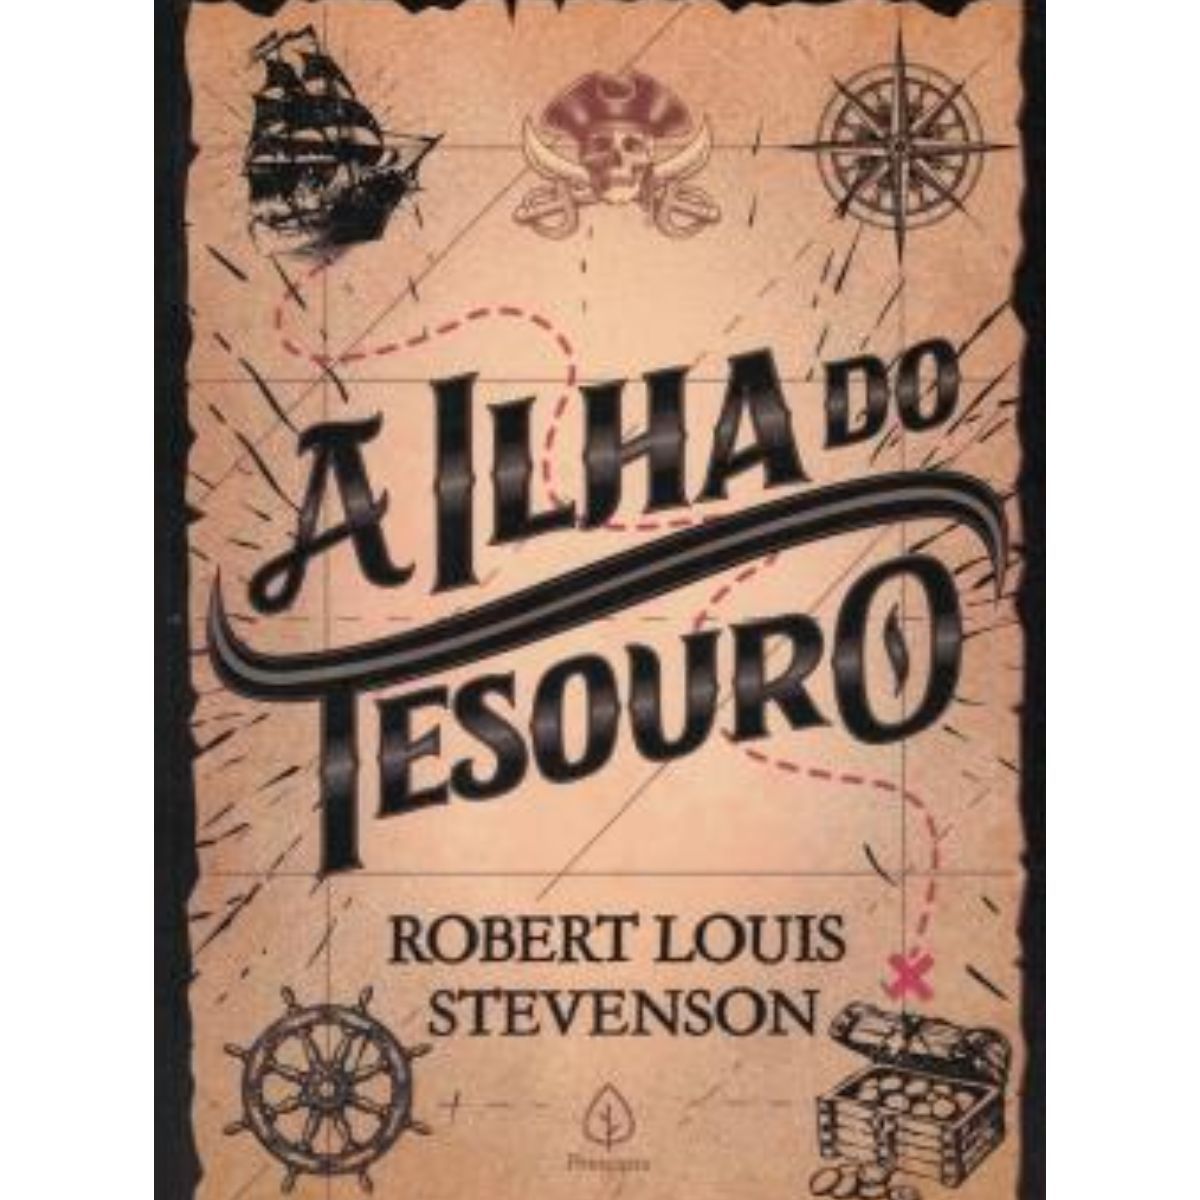  A Ilha do Tesouro (Em Portugues do Brasil): 9788551303177:  Stevenson Louis: ספרים